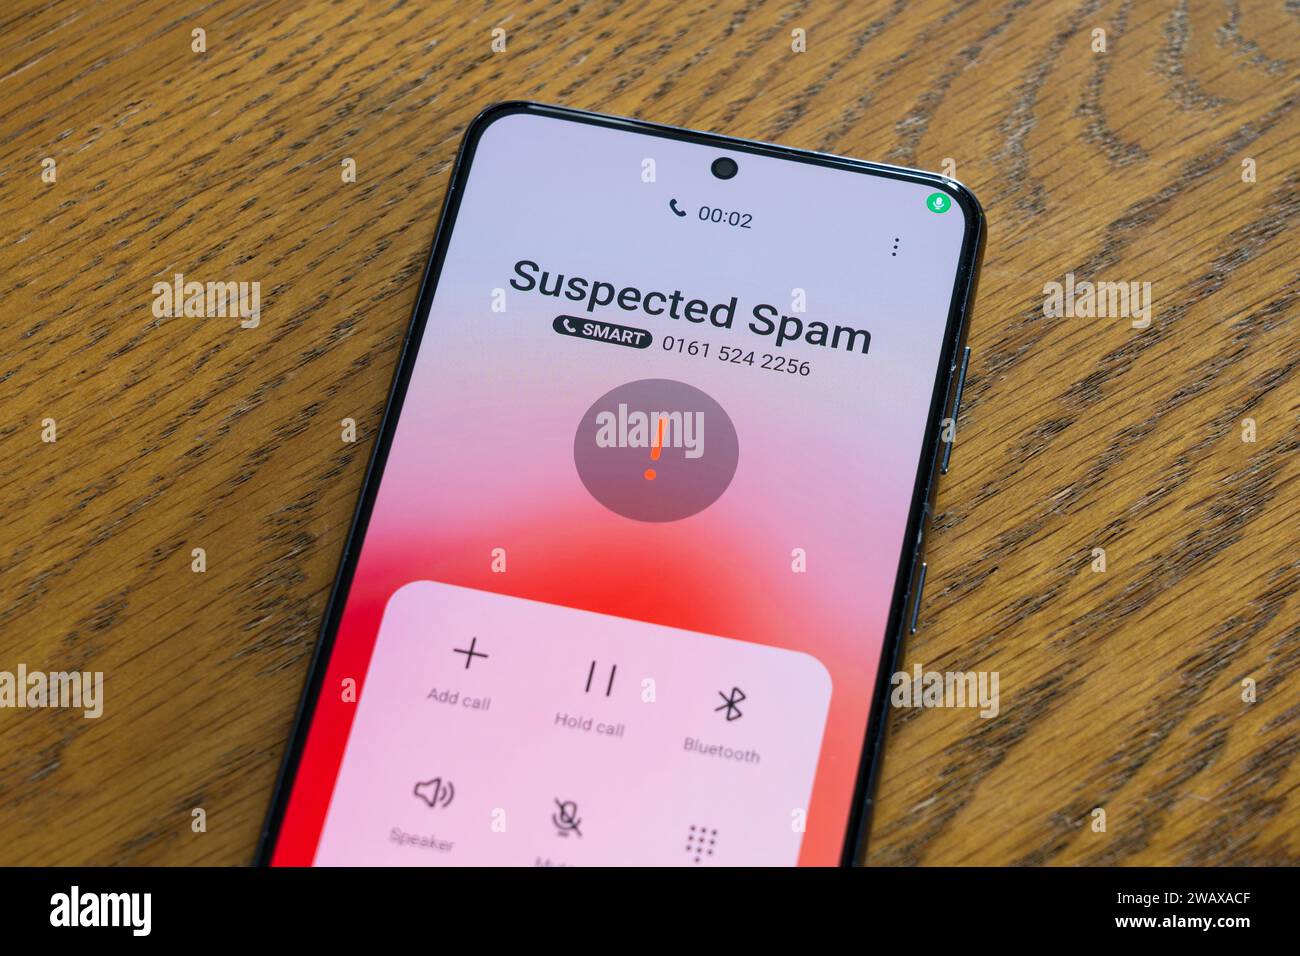 Un écran de smartphone affichant un appel suspect entrant signalé comme un  télévendeur, Royaume-Uni. Thème : appels gênants, appels à froid, appel  spam, télévendeur Photo Stock - Alamy